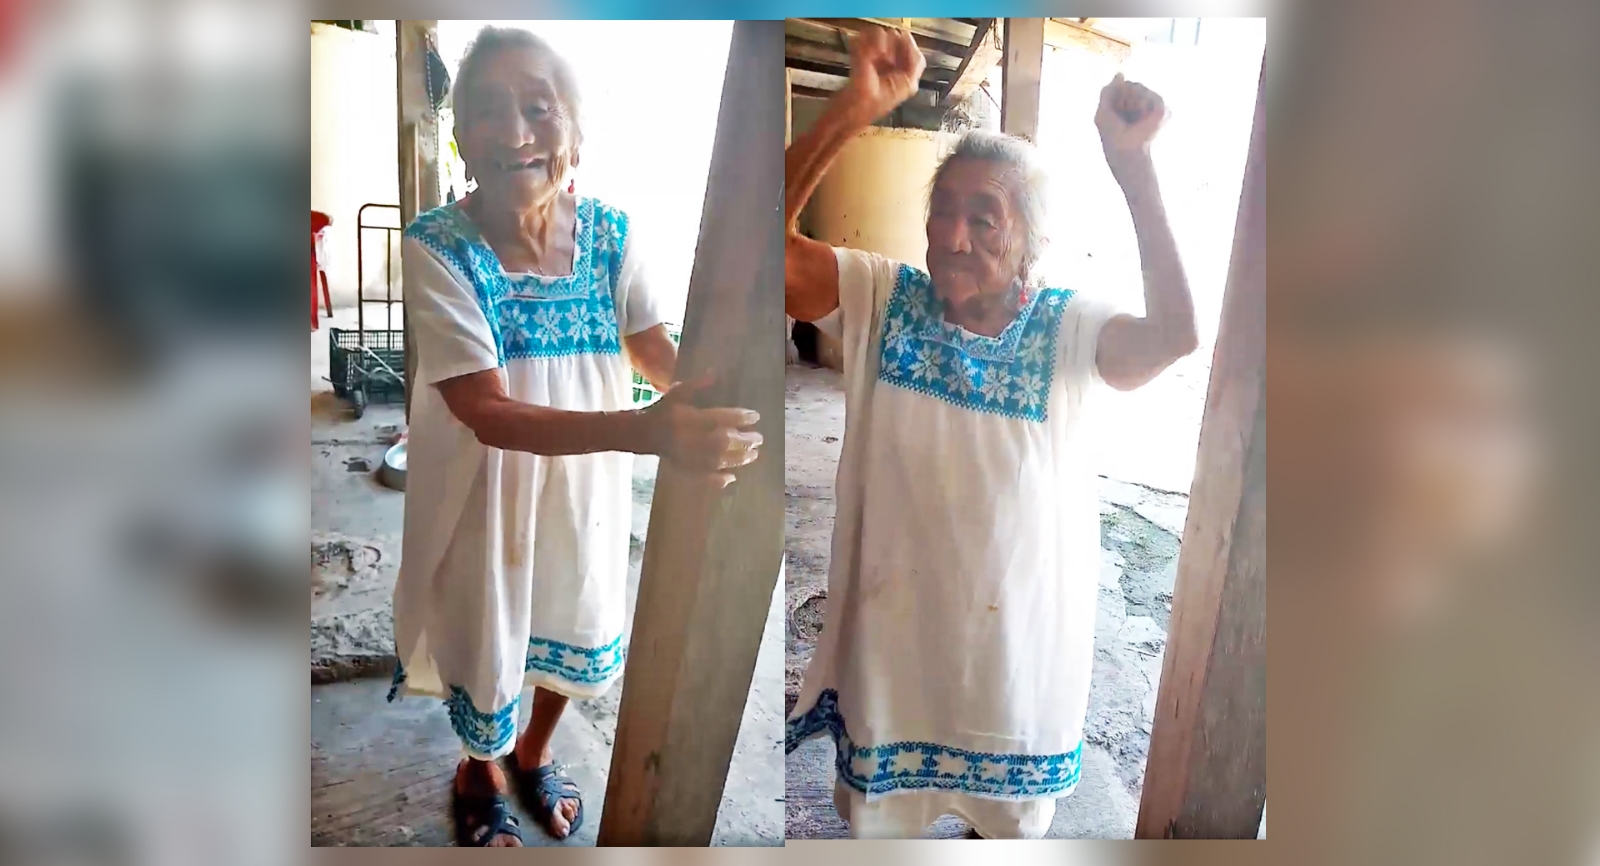 Abuelita yucateca de 103 años comparte su rutina de ejercicios en hipil (VIDEO)